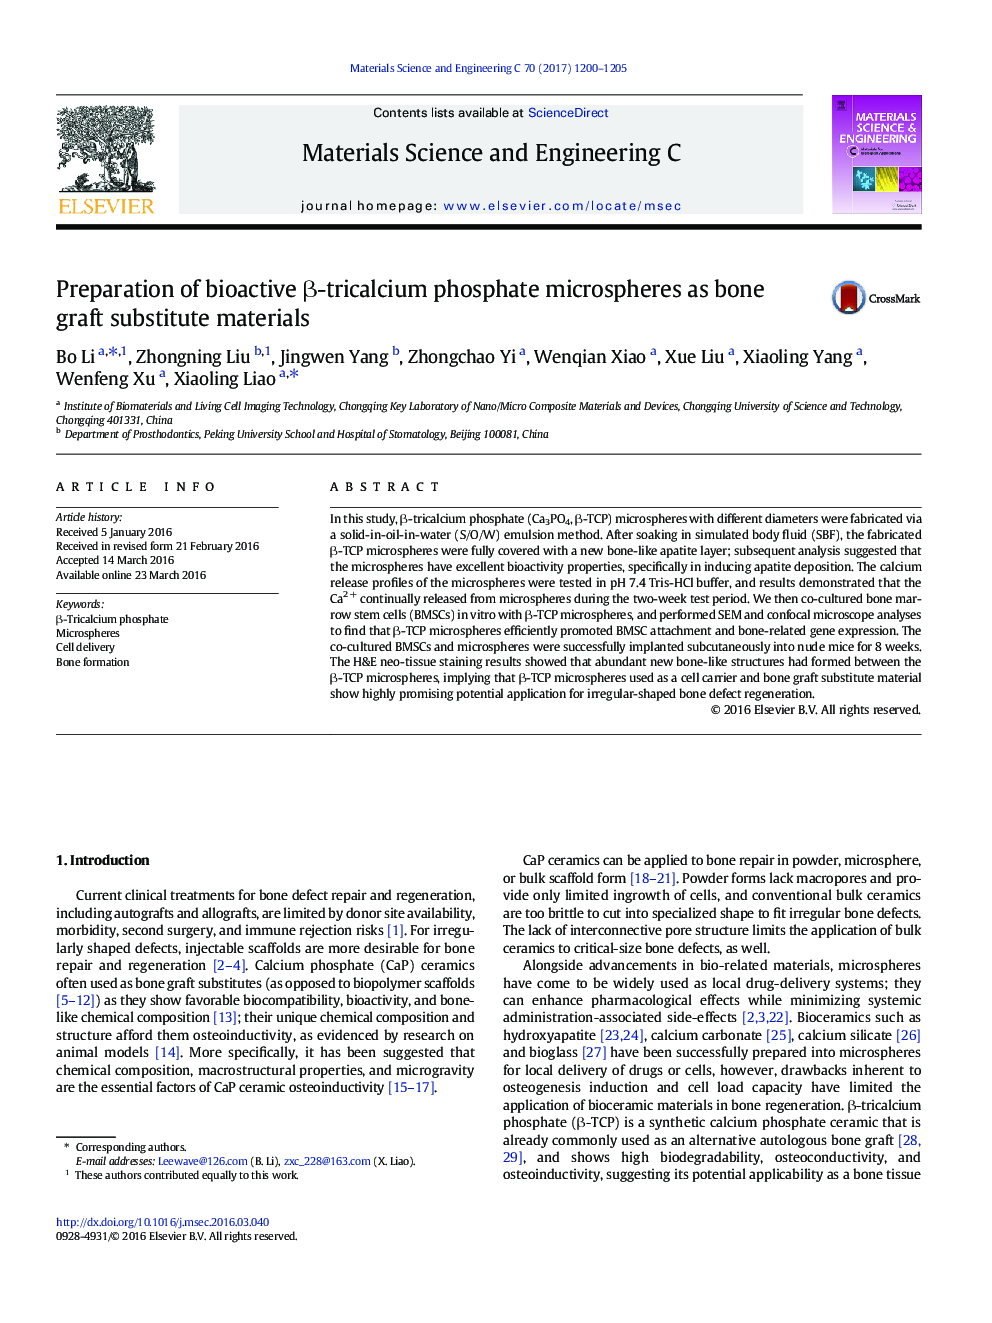 Preparation of bioactive Î²-tricalcium phosphate microspheres as bone graft substitute materials